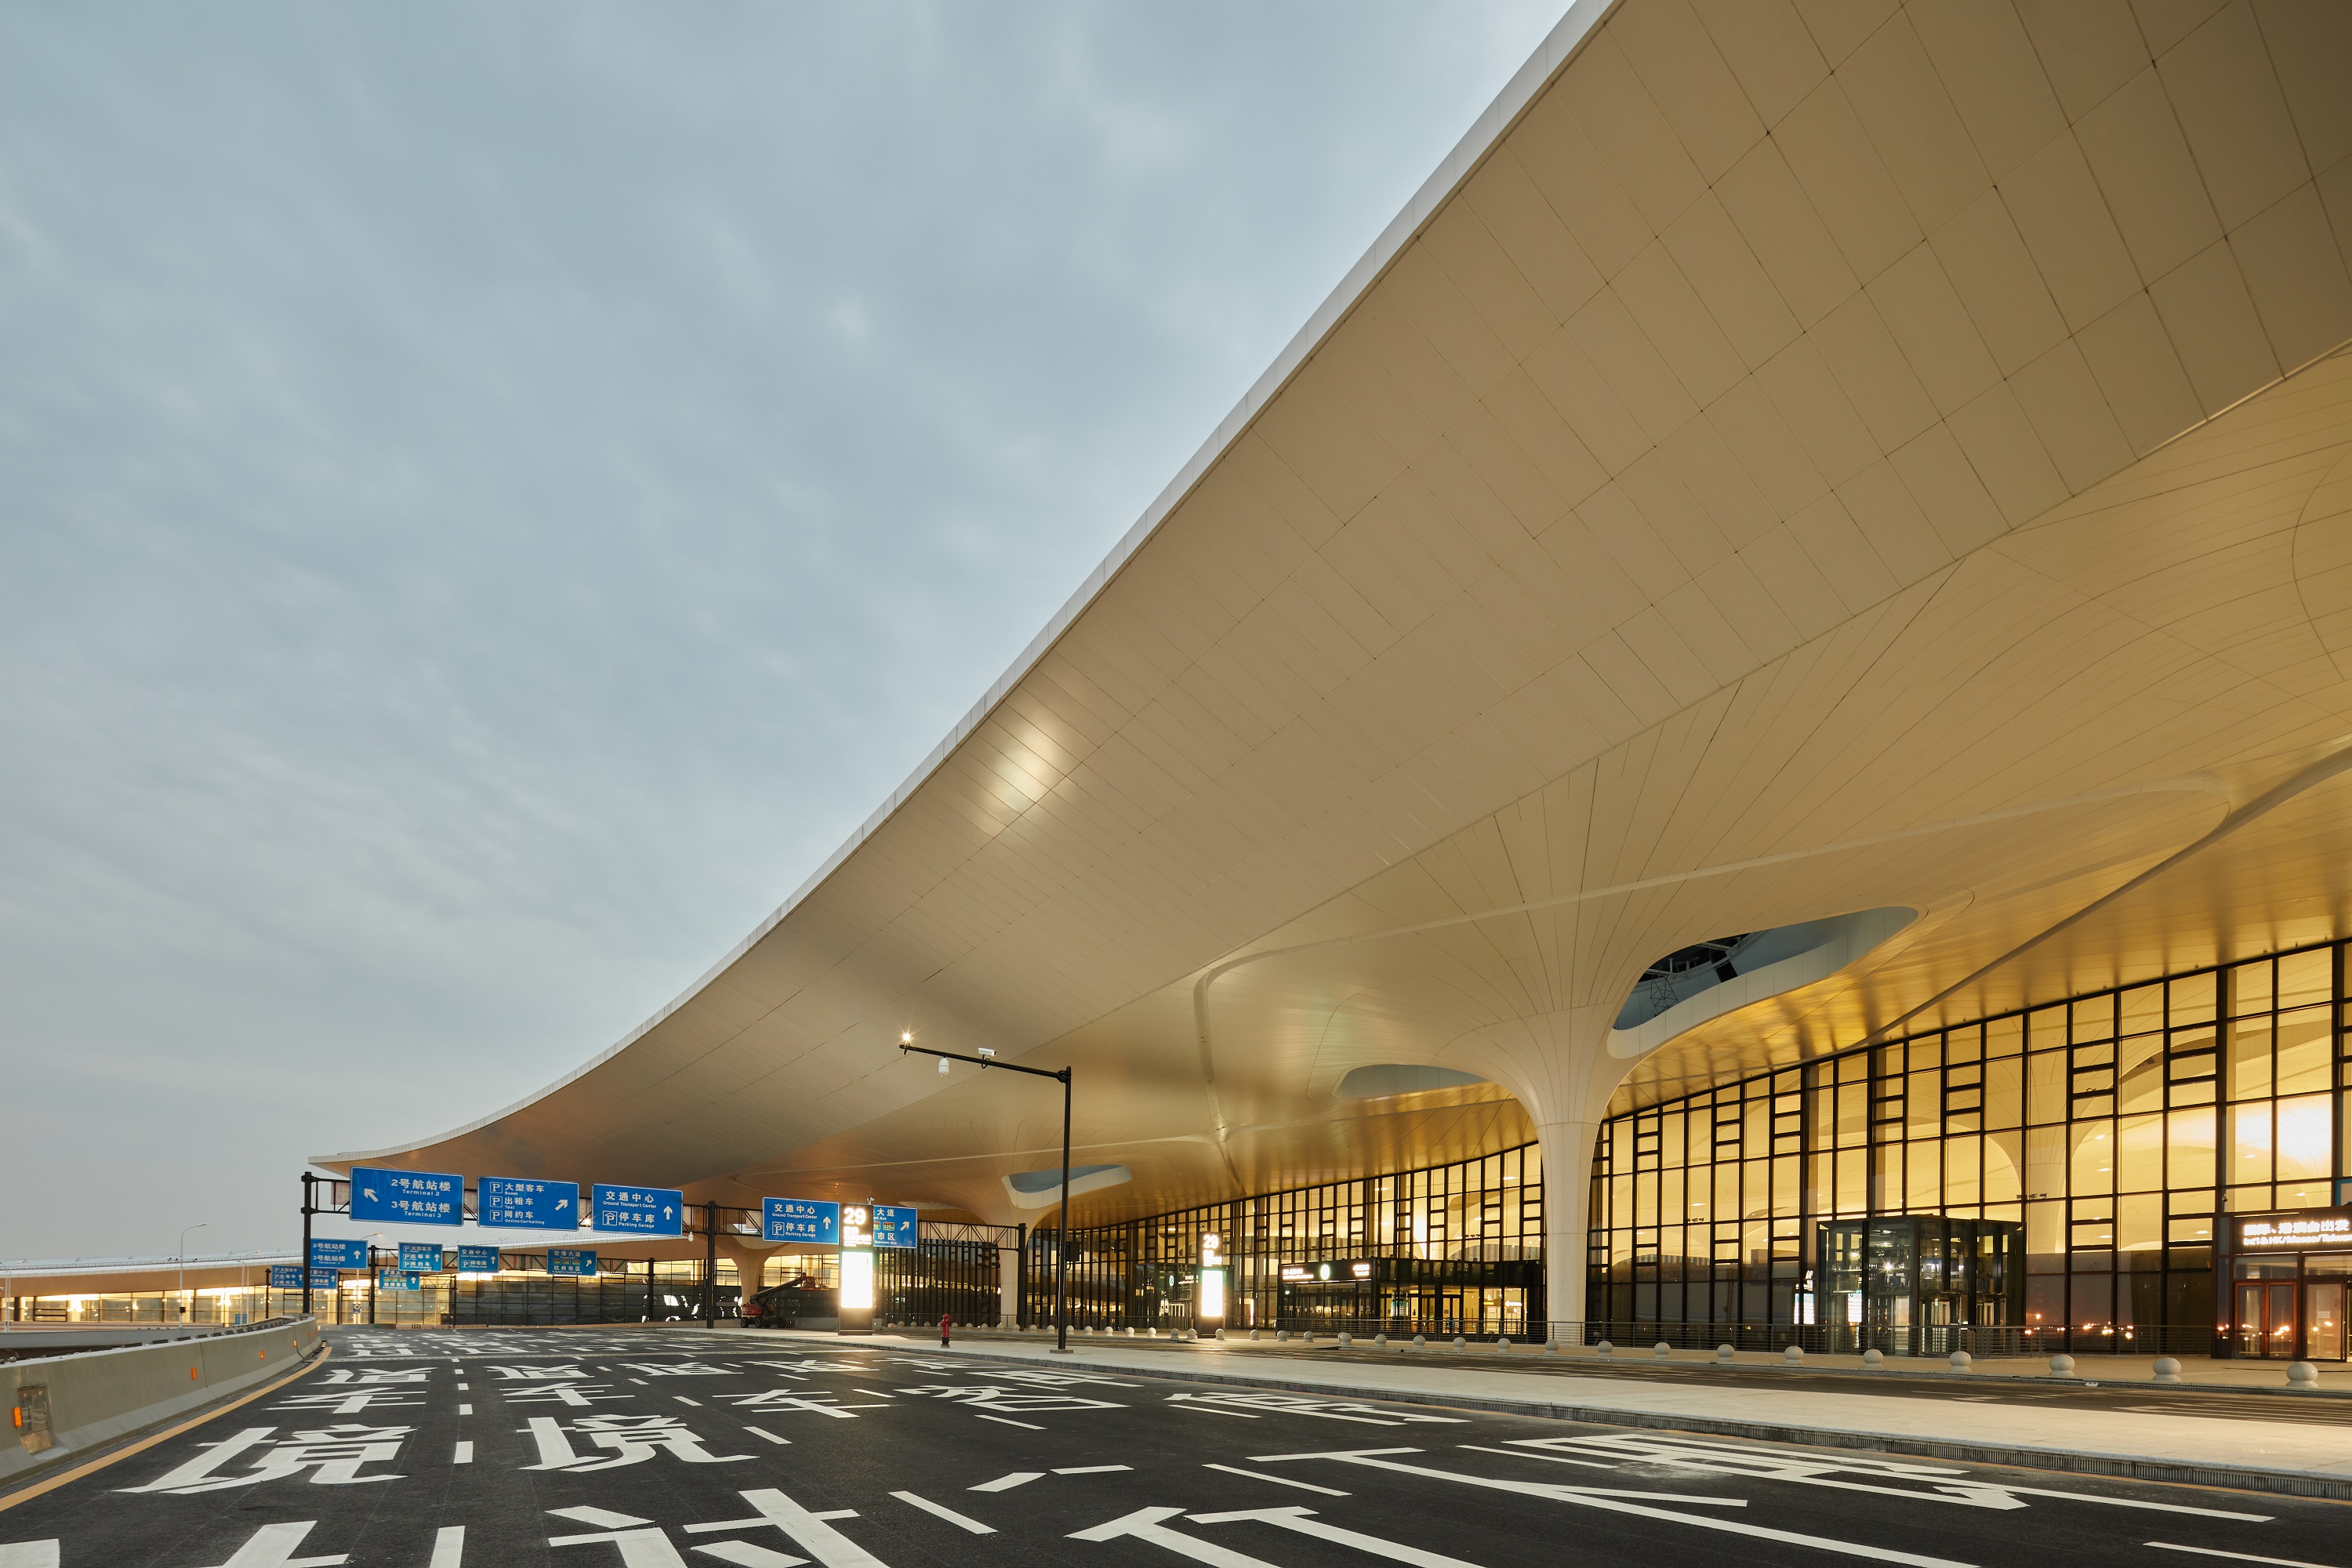 揭秘萧山国际机场三期项目建设,亚厦幕墙攻克多项关键技术